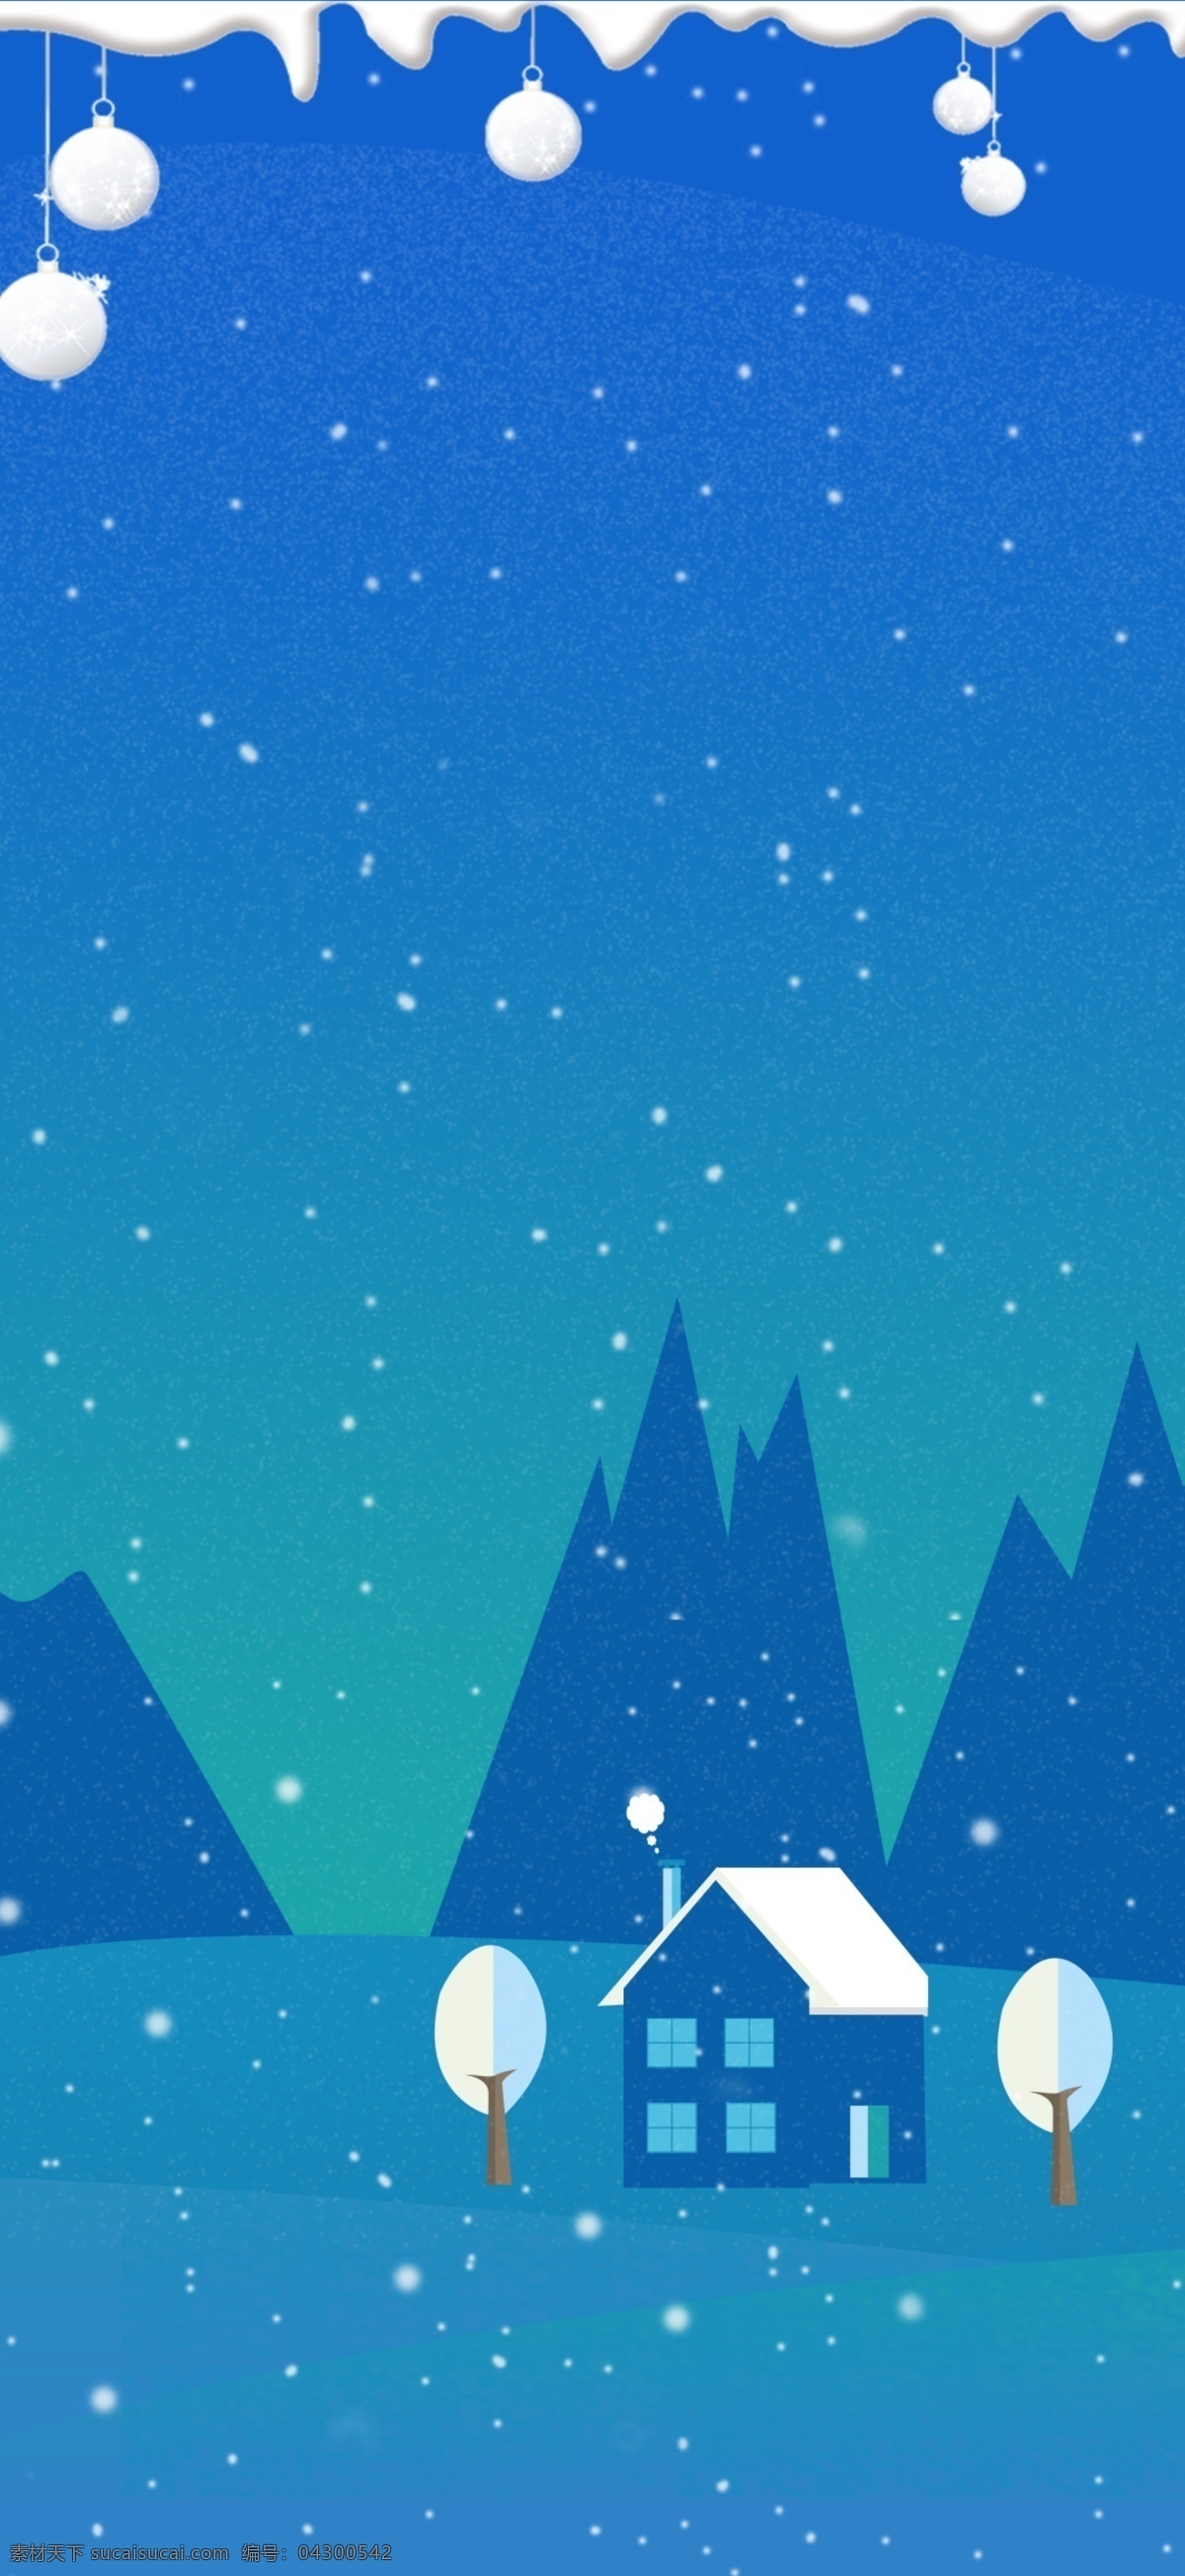 节气 立冬 蓝色 插画 背景 传统节气 冬天背景 色彩背景 背景psd 小清新 下雪 树林背景